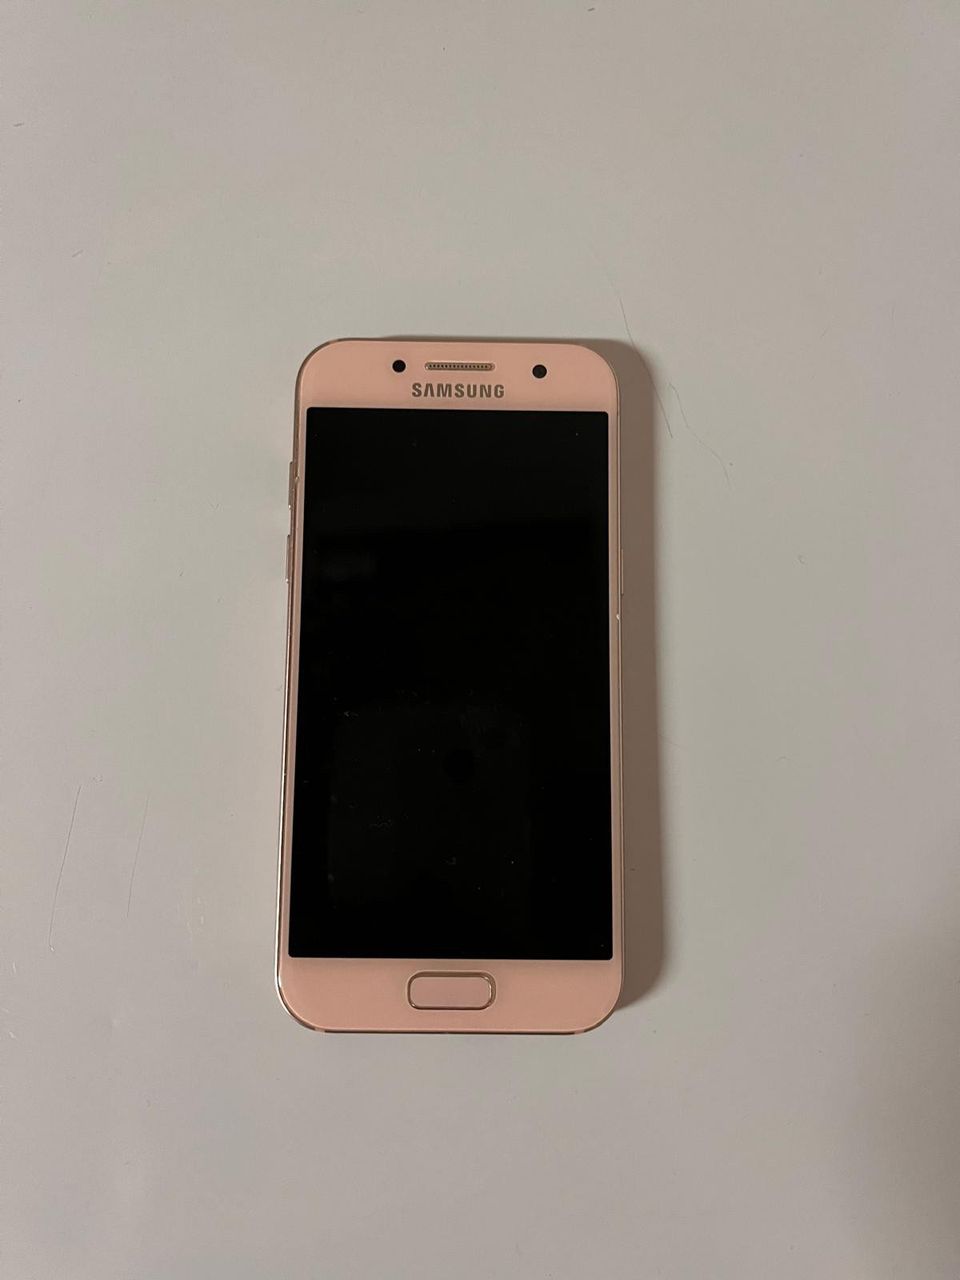 Samsung galaxy a3 2017